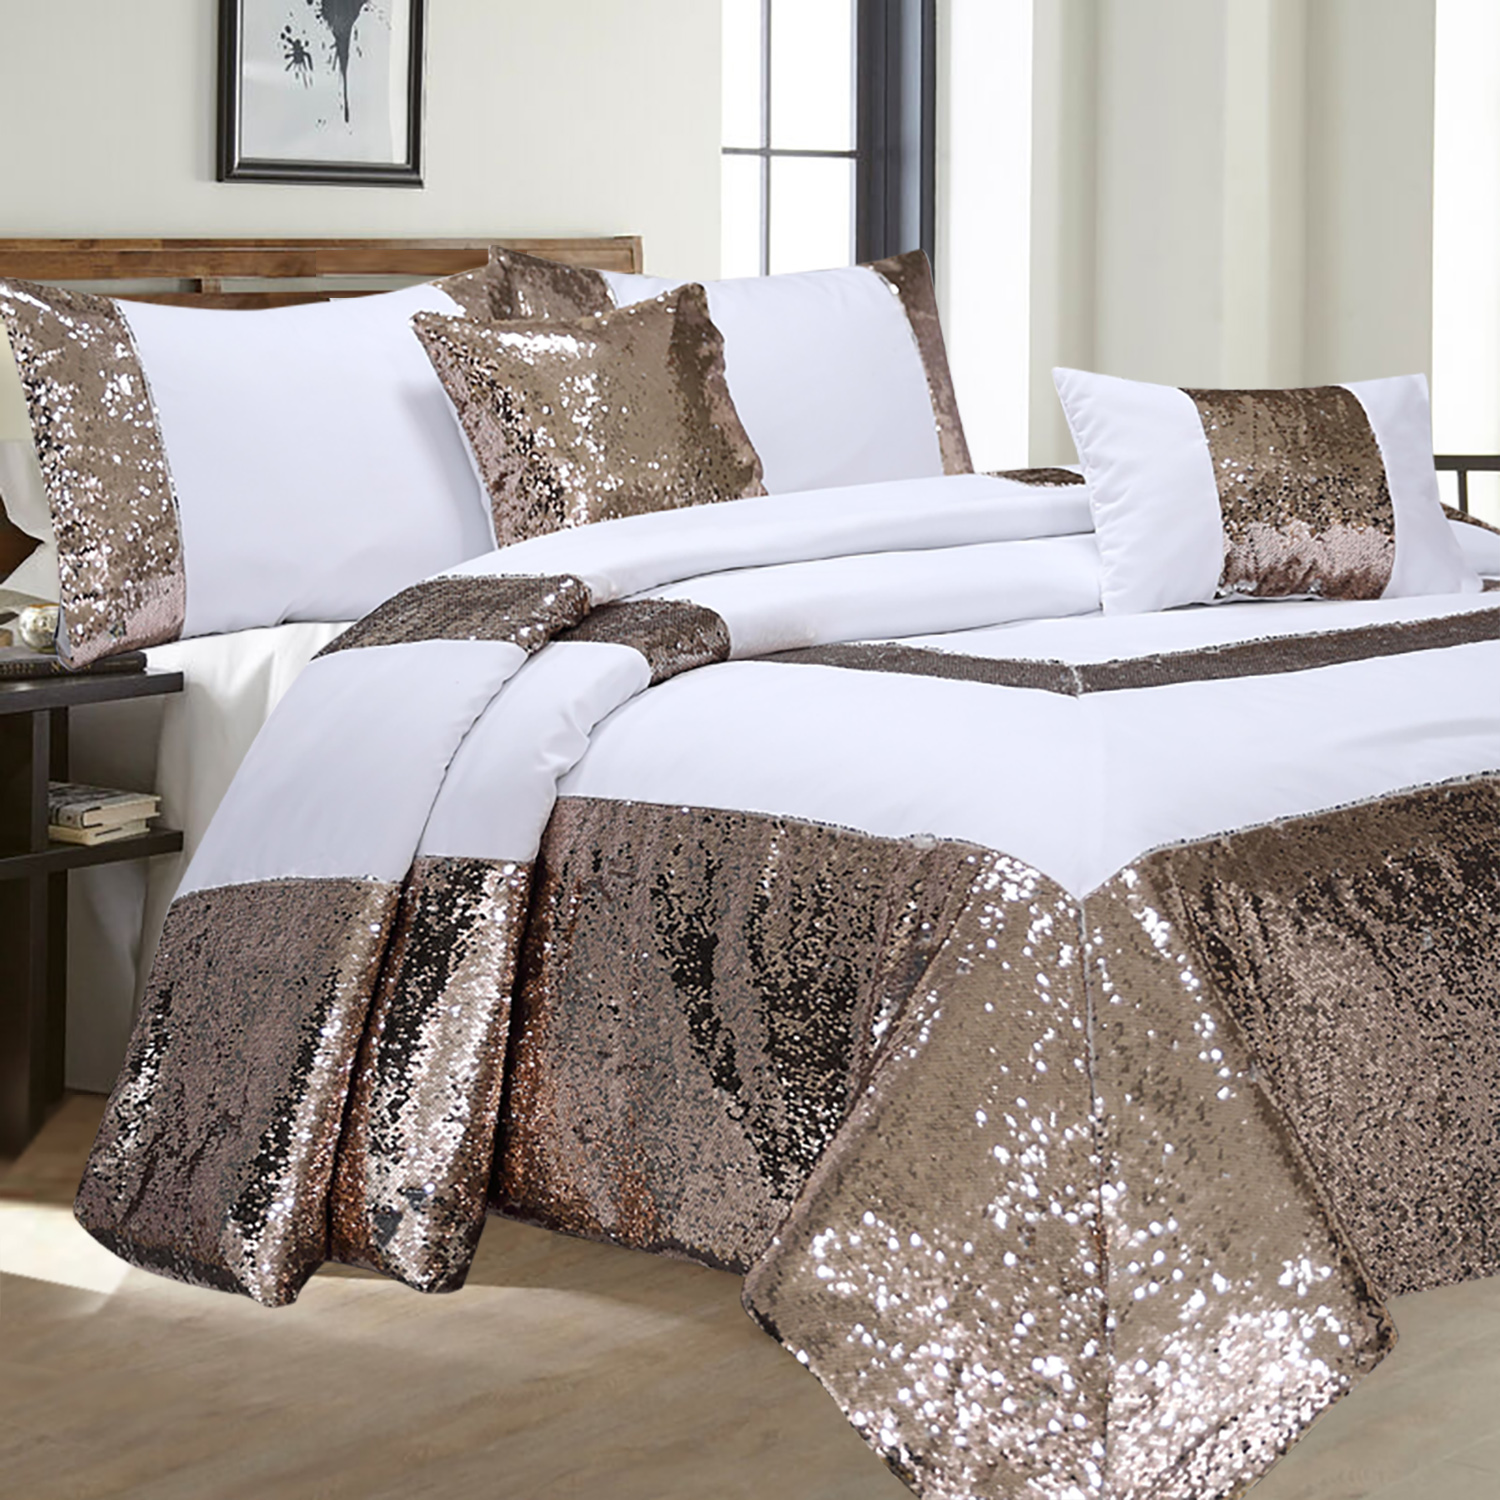 HIG 5 Piece Reversible Sequins Patchwork Pattern Comforter Bedding Set